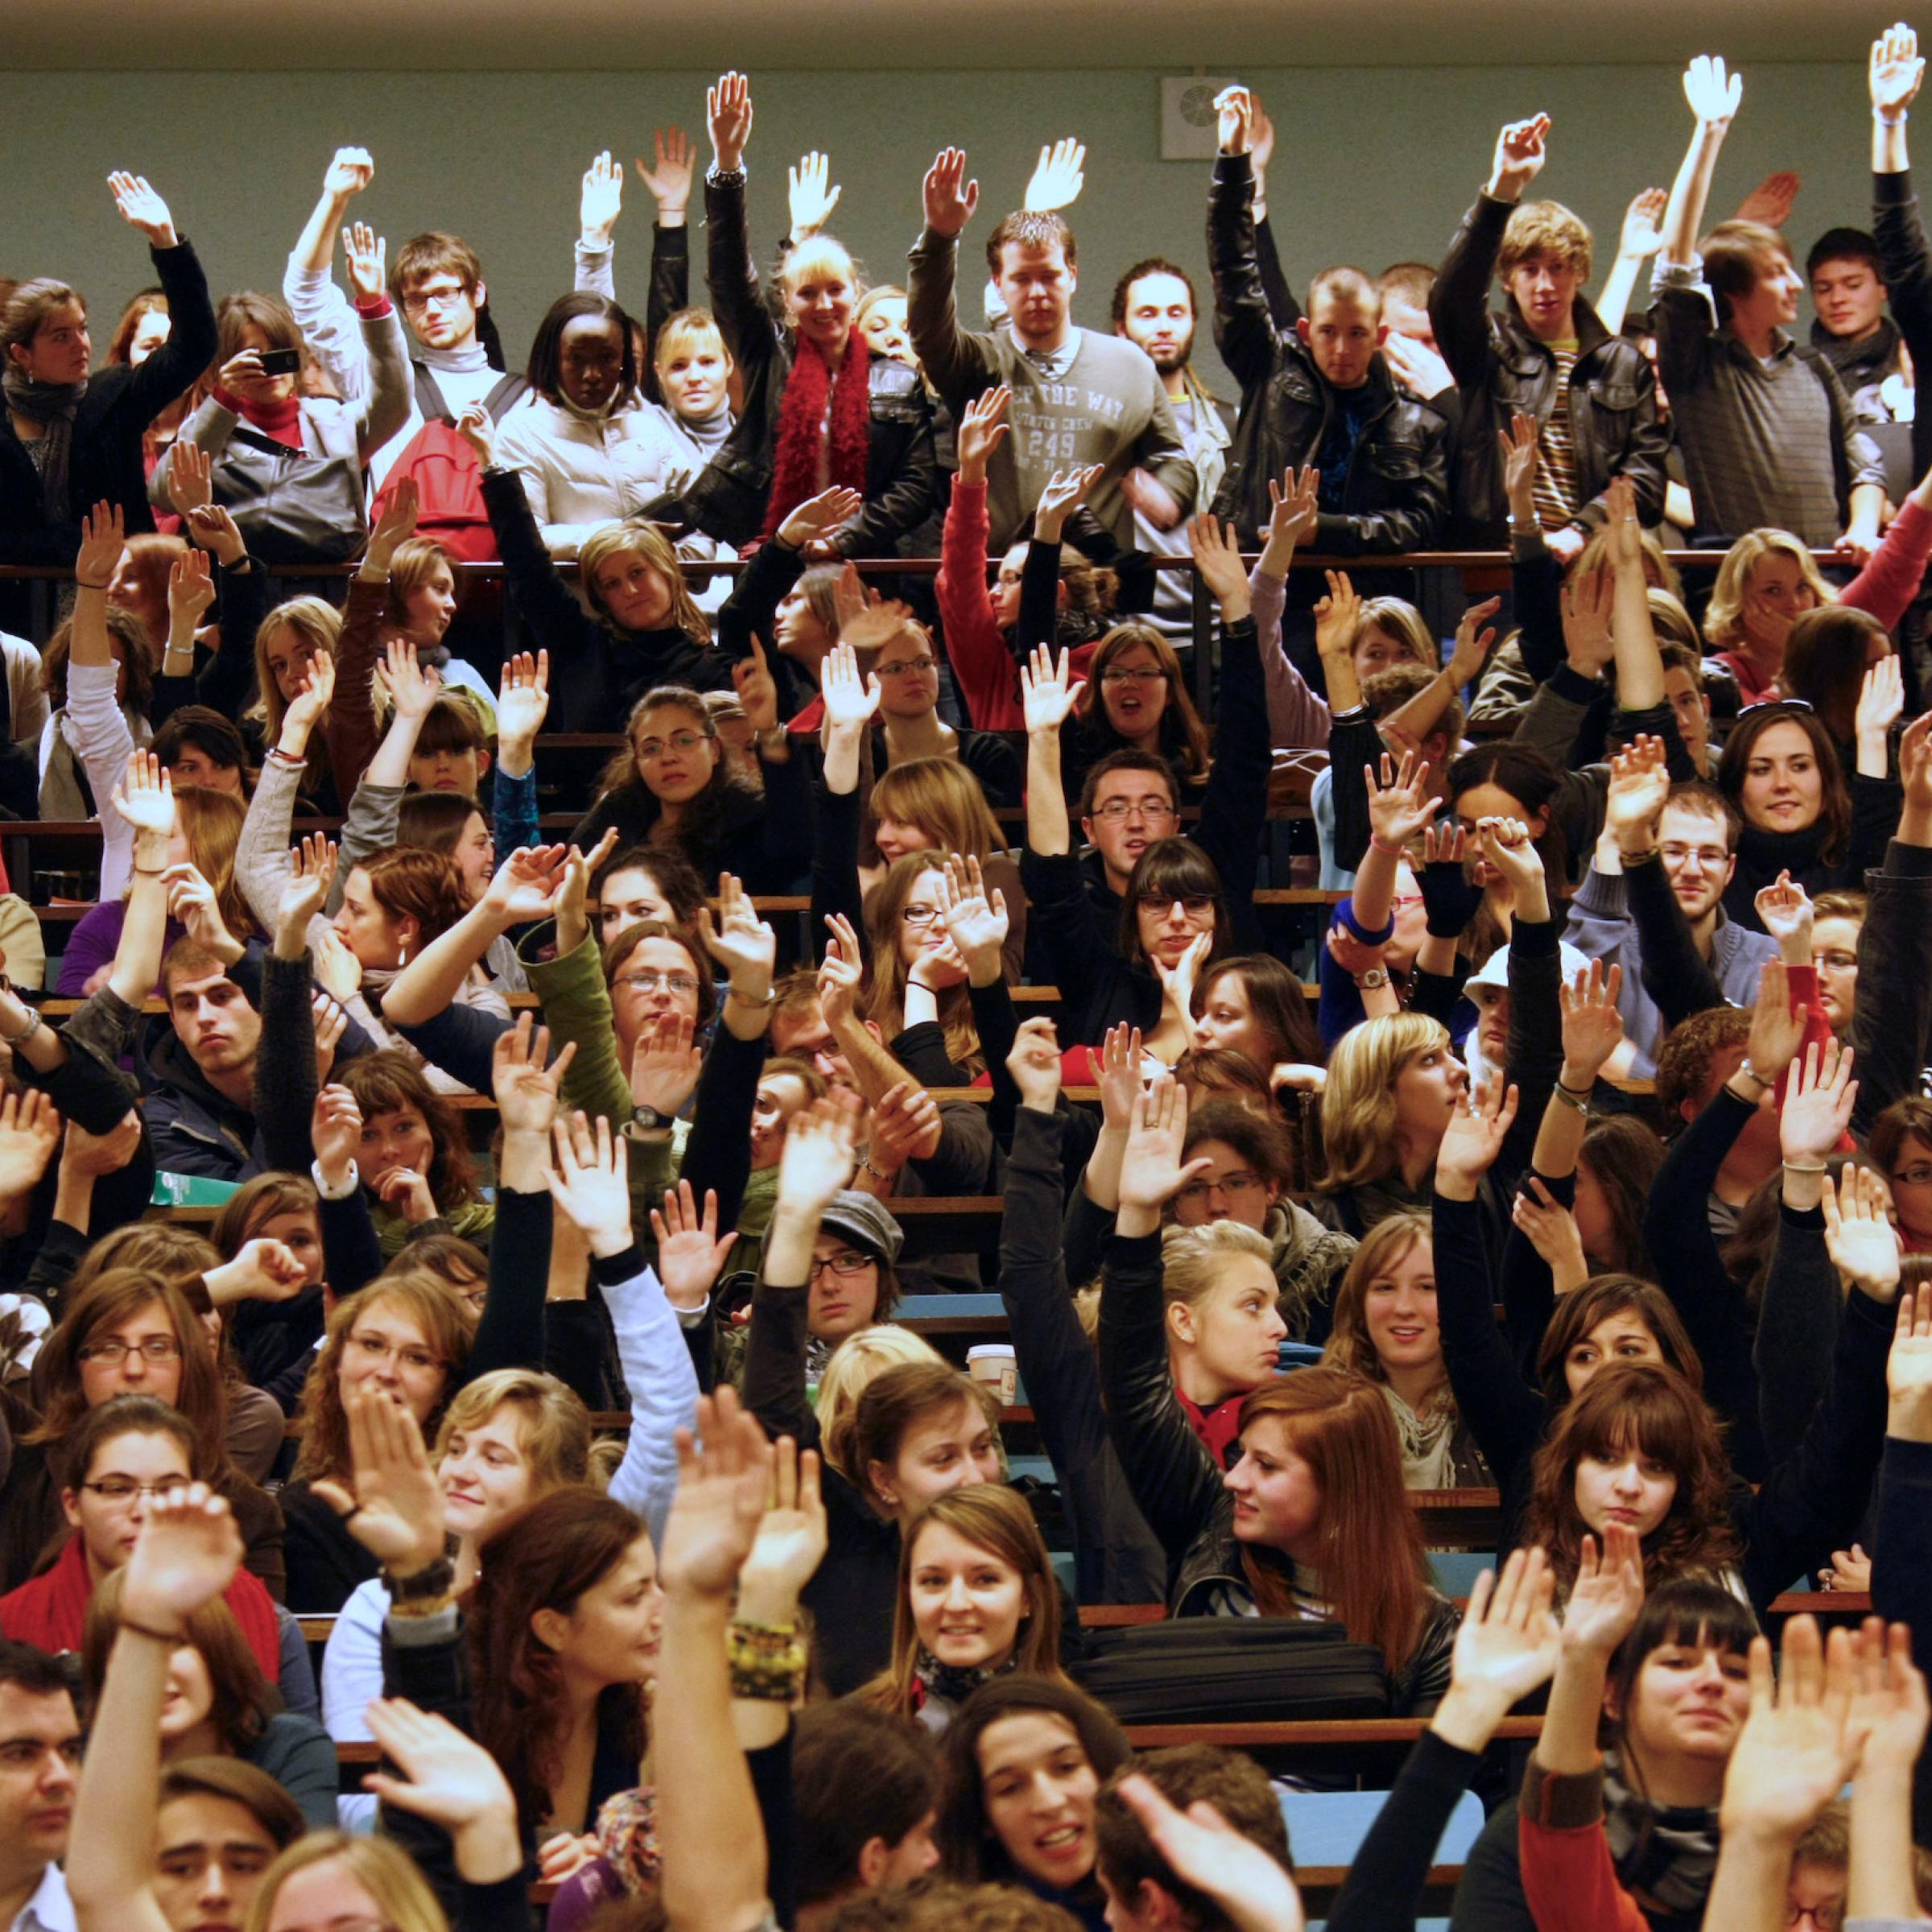 Eine große Zahl von Studierenden im Hörsaal. Sie sitzen dicht gedrängt in den Reihen und heben die Hände bei einer Abstimmung. Die Studierenden sind mehrheitlich weiß.